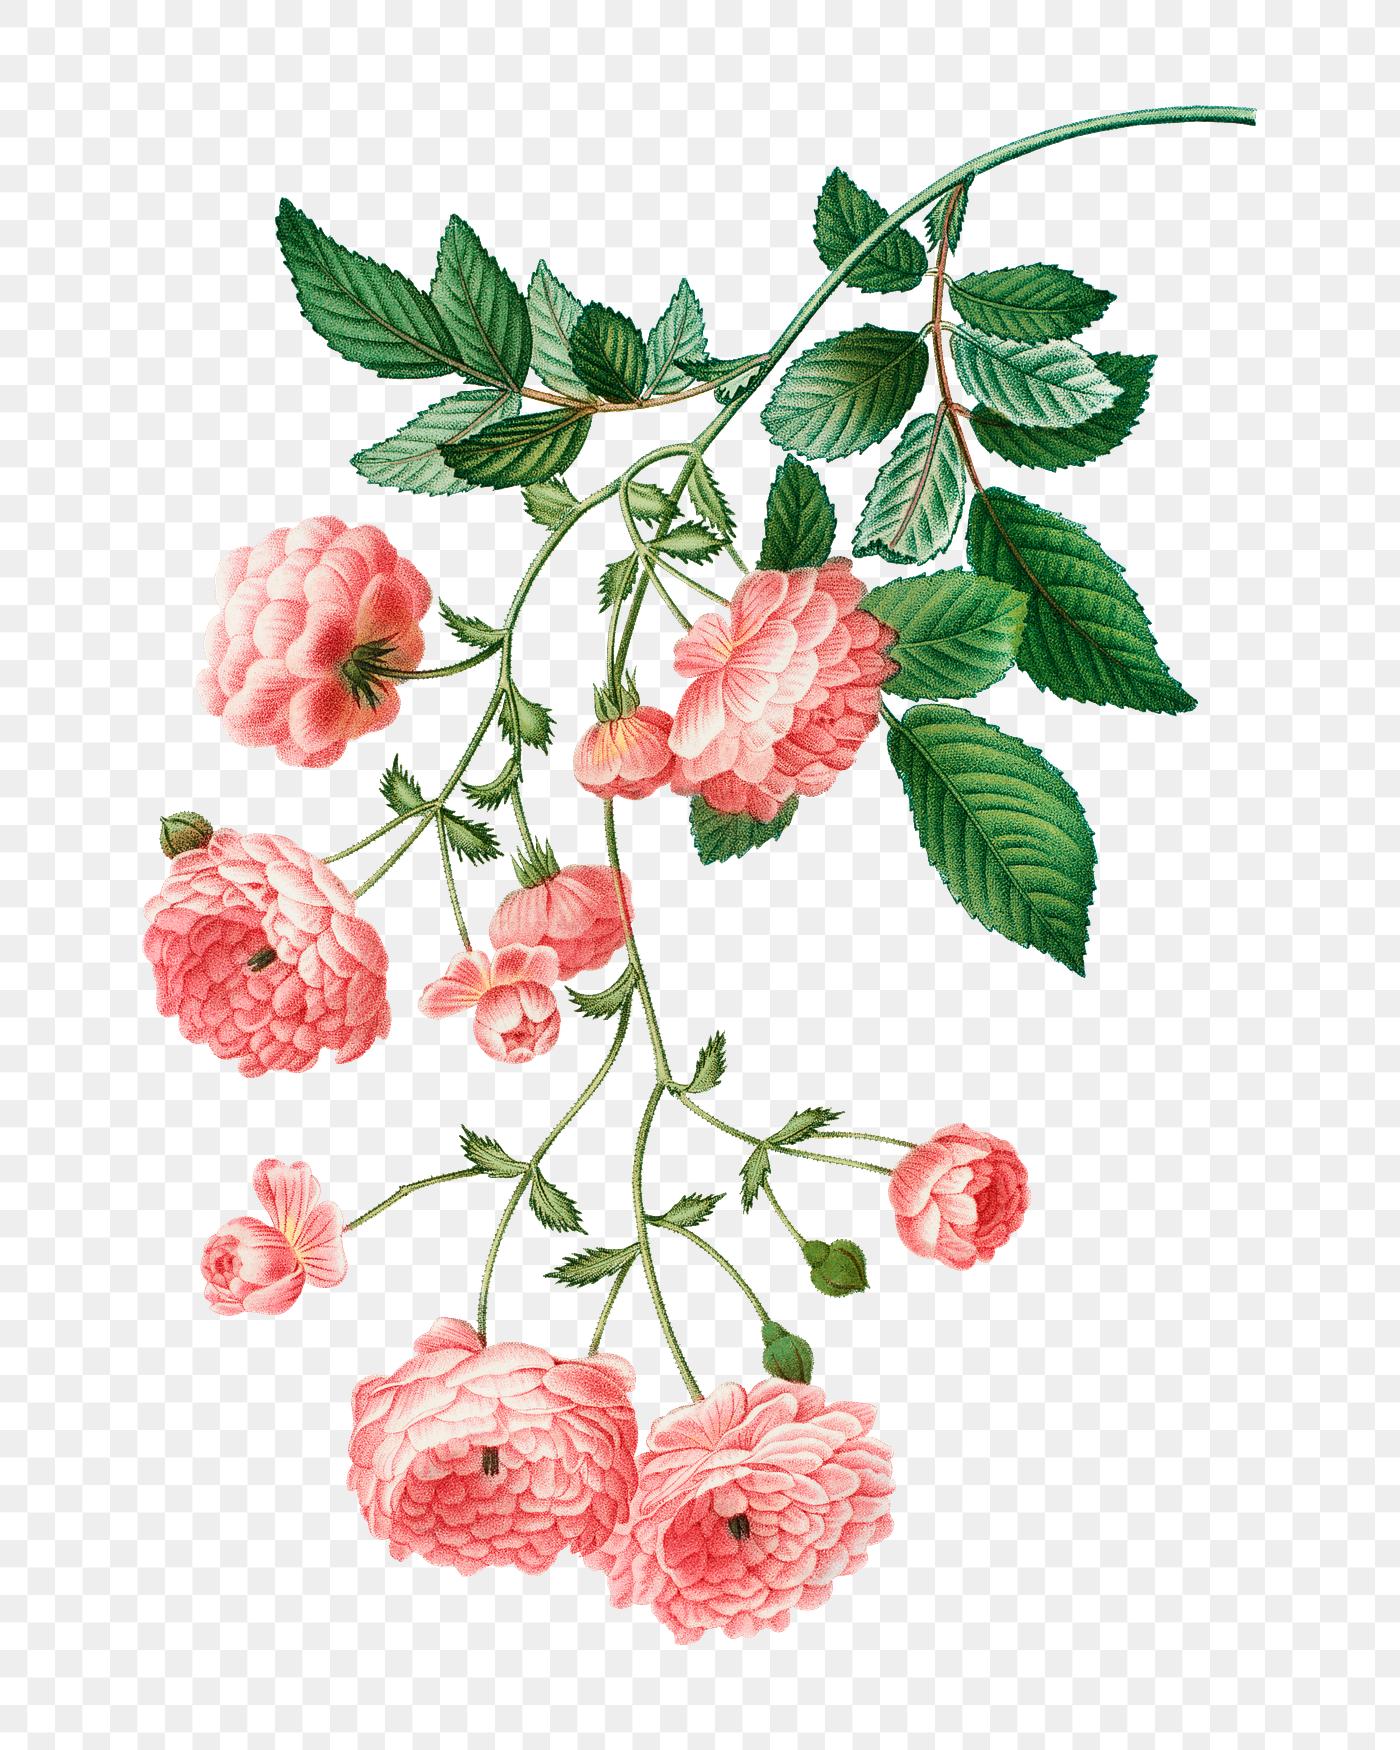 Pink Rambler roses | Free stock illustration - 569363